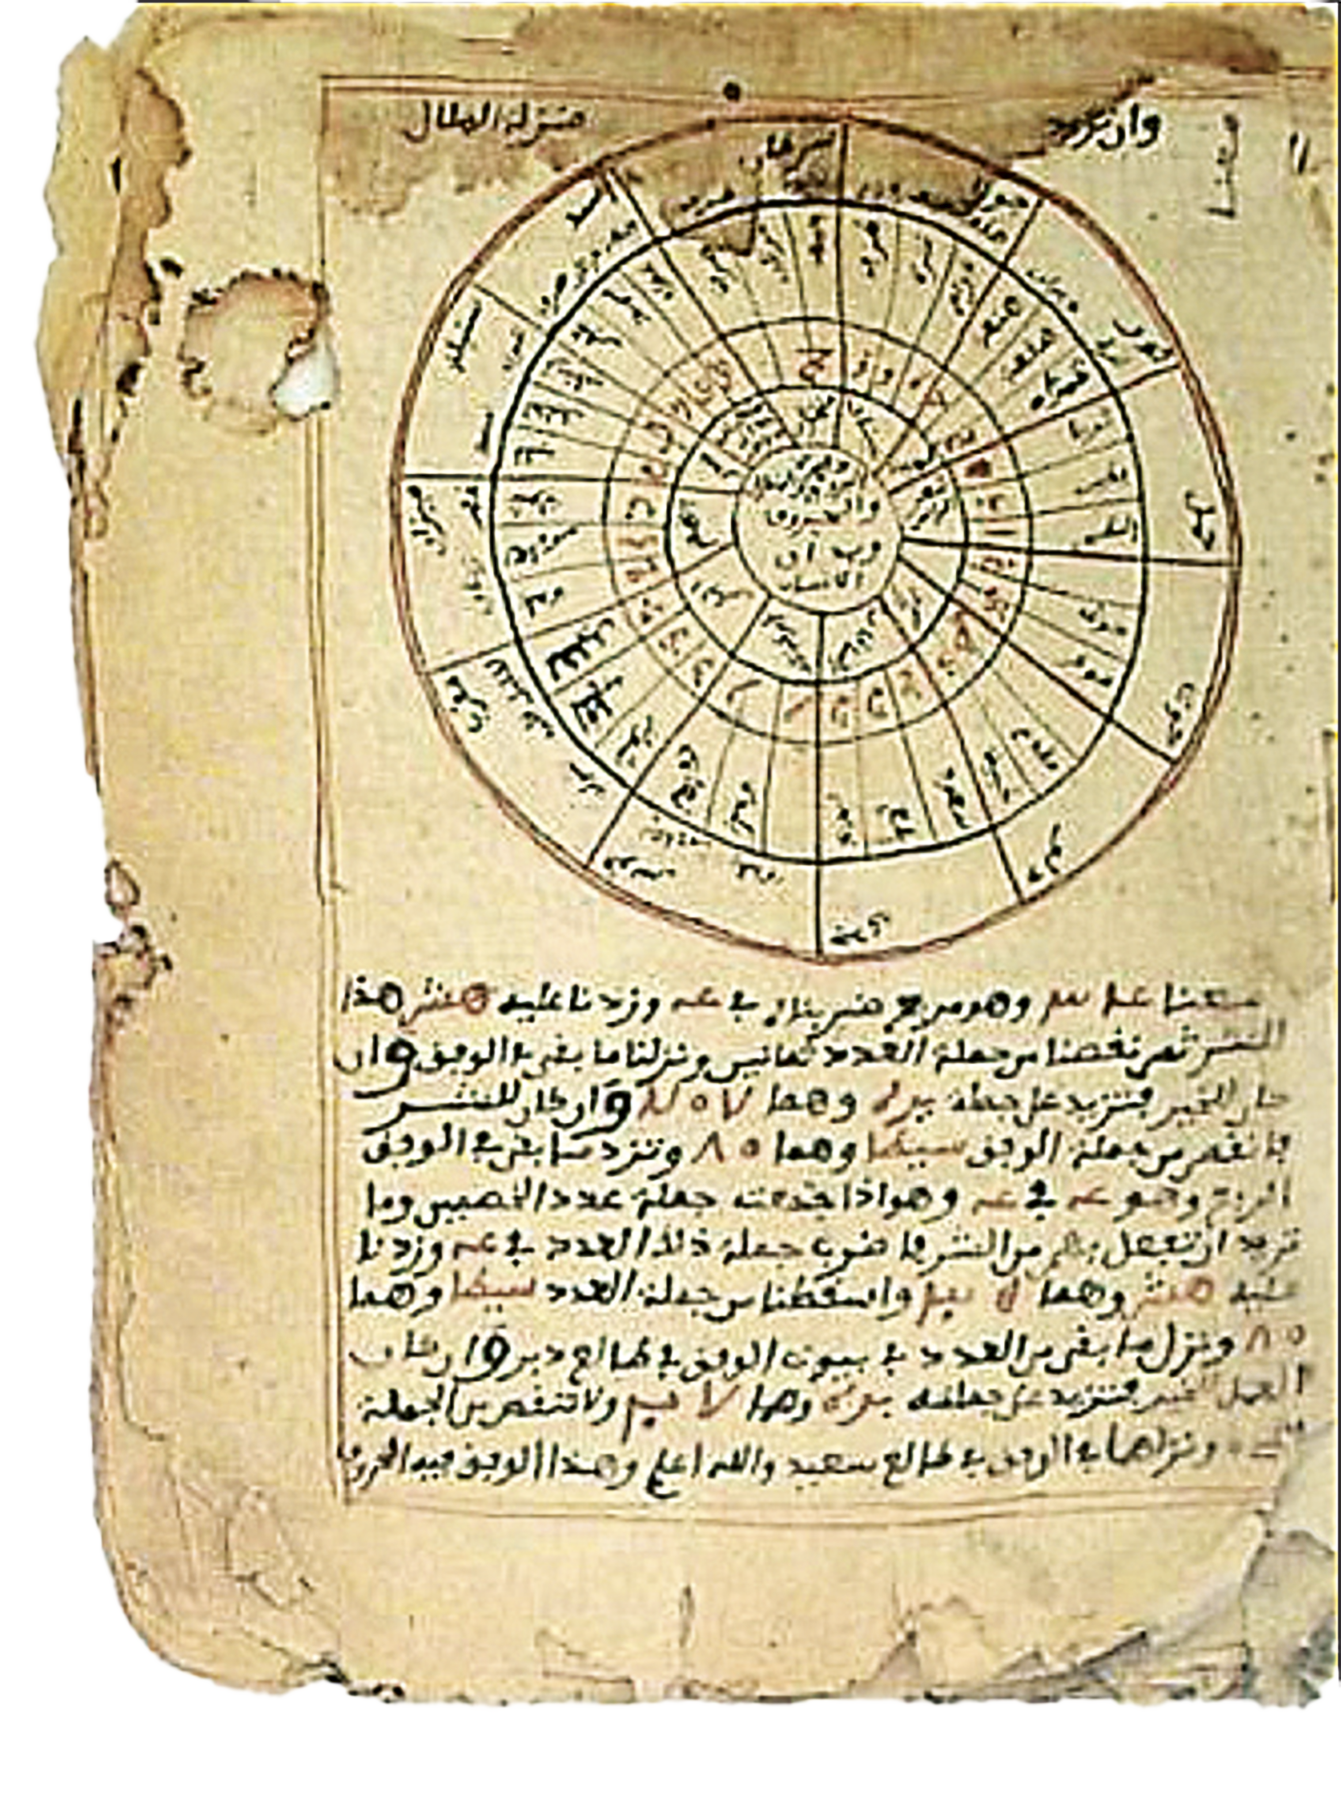 Fotografia. Pedaço de papel amarelado com o desenho de um círculo com divisórias na parte superior. Na parte inferior, escritos em árabe.